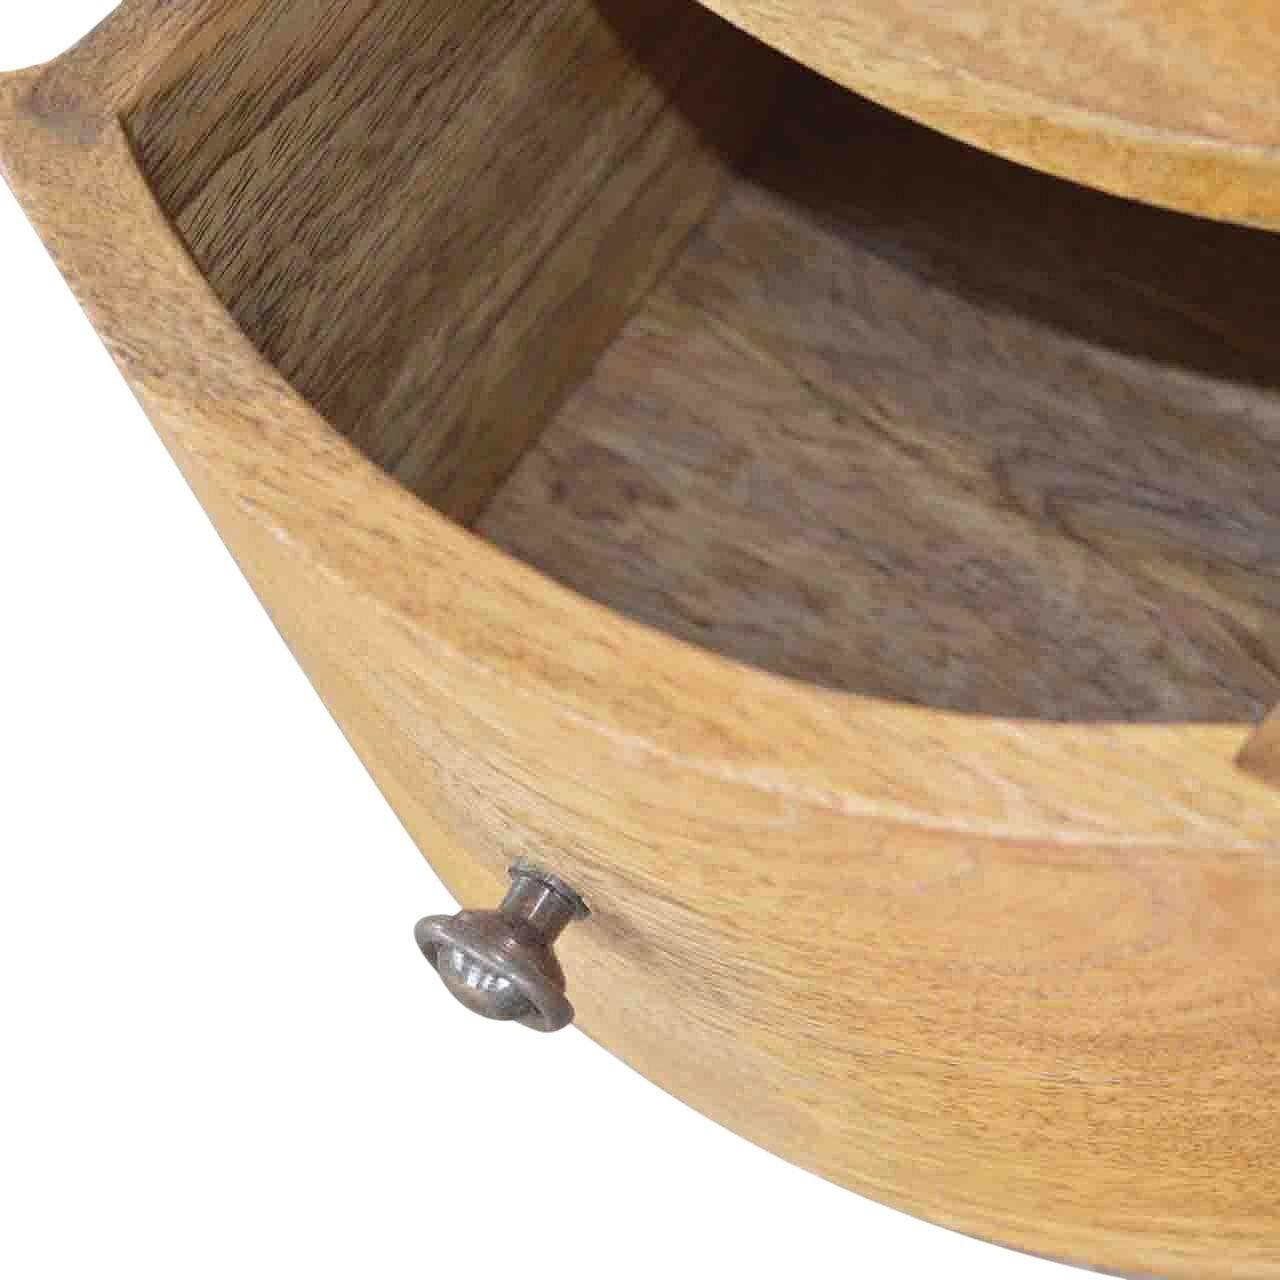 3 drawer drum chest - crimblefest furniture - image 8